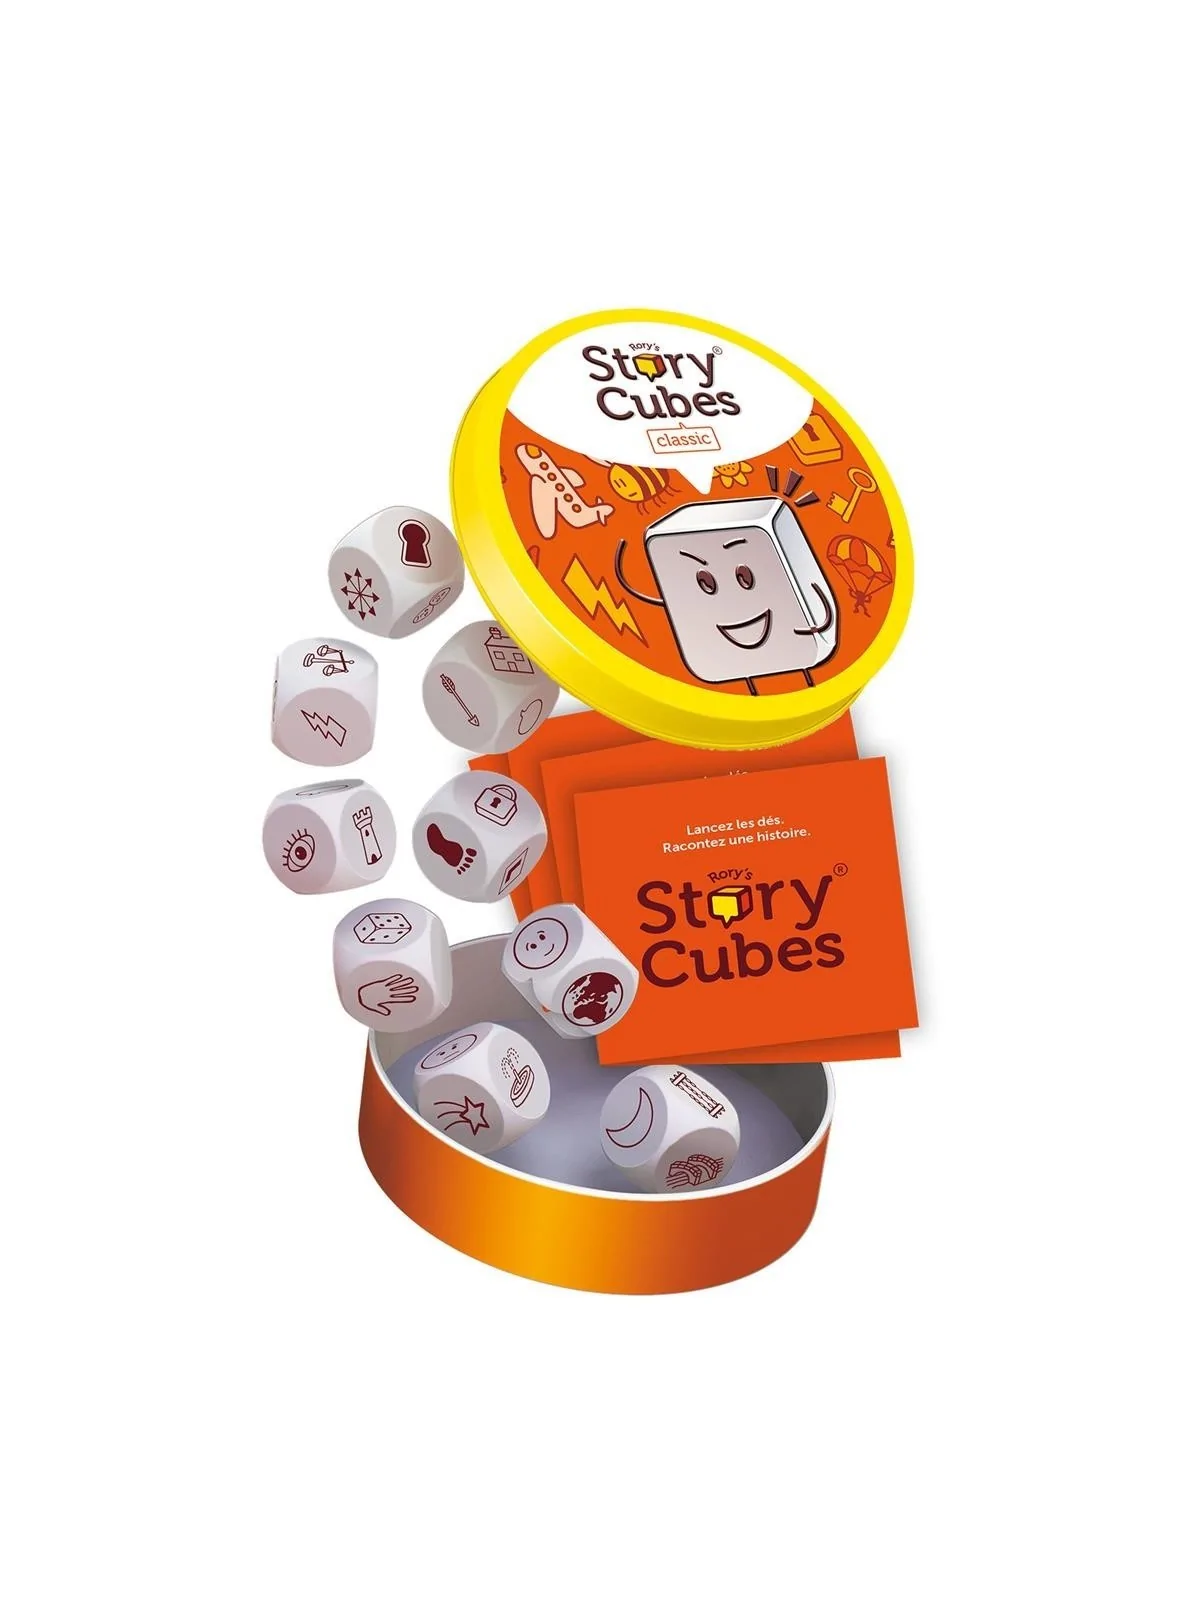 Comprar Rory's Story Cubes: Original barato al mejor precio 10,79 € de